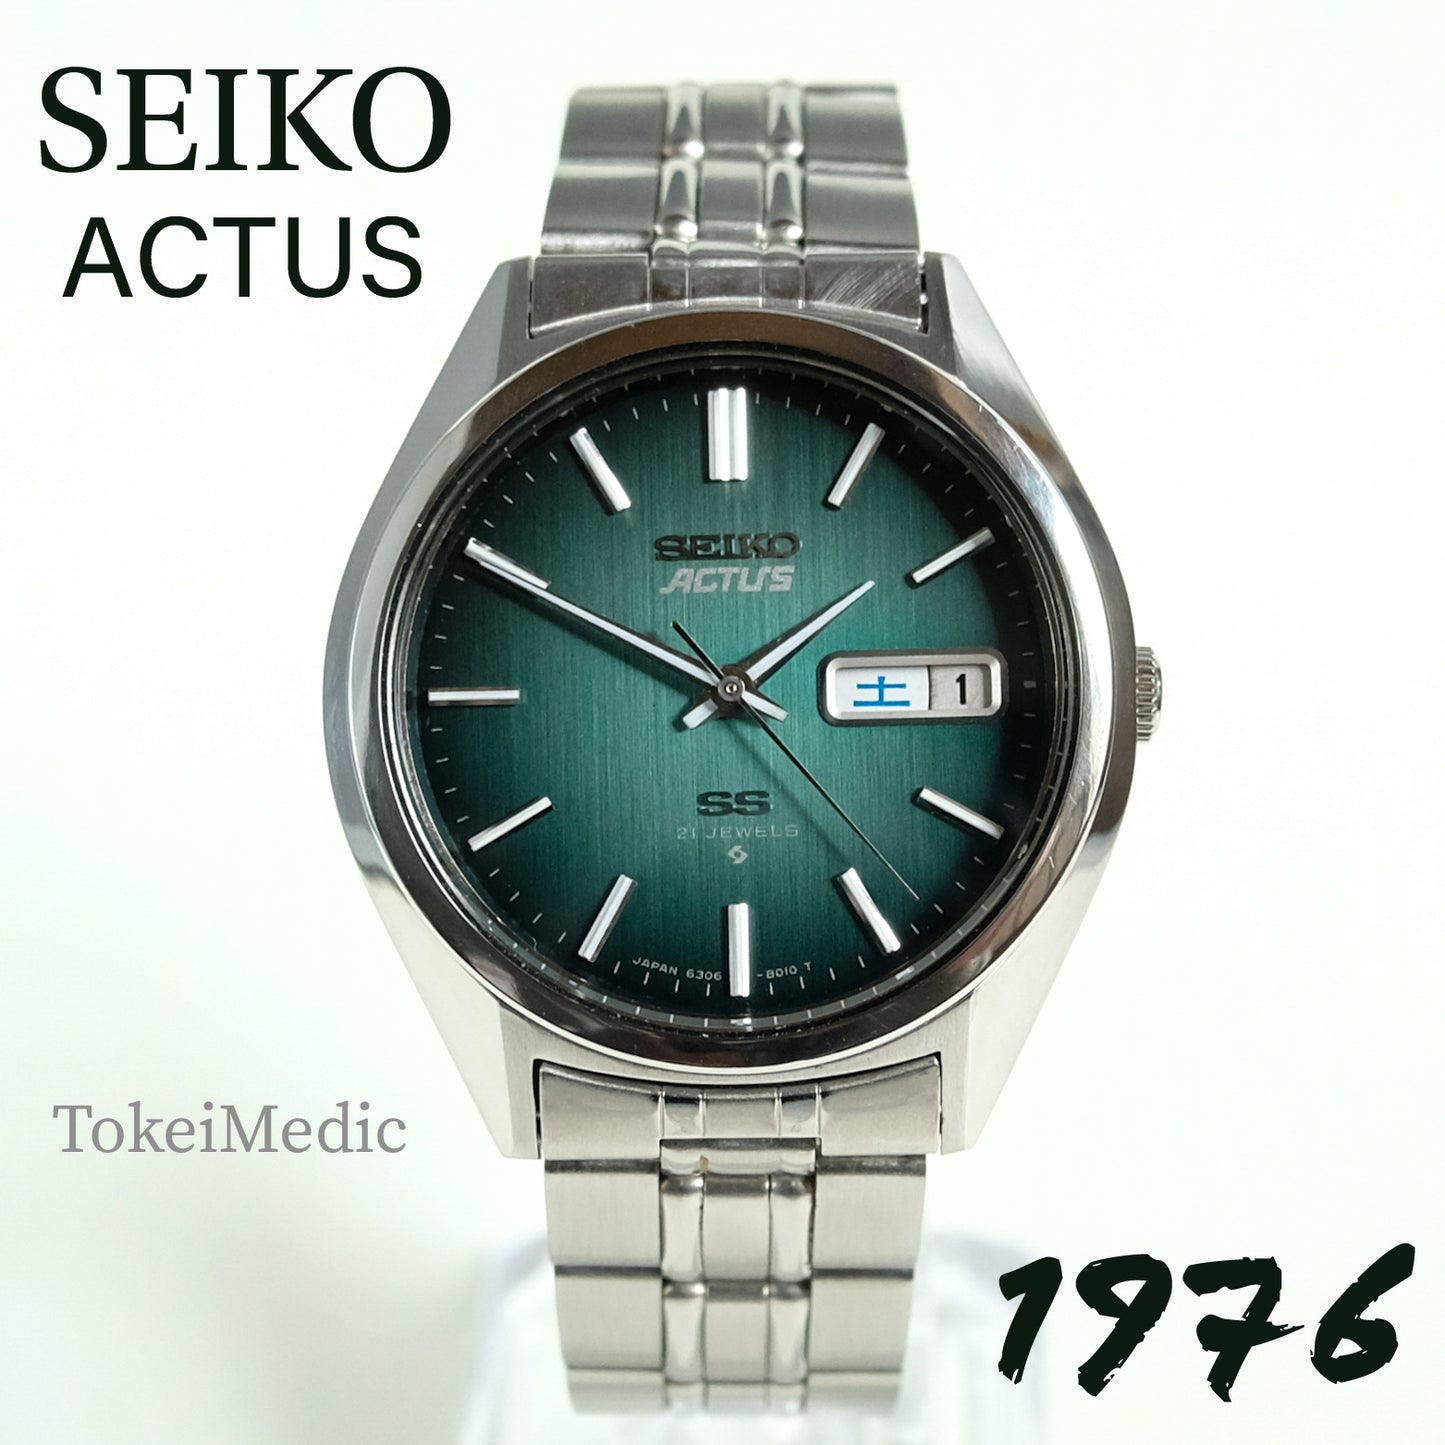 1976 Seiko Actus 6306-8020